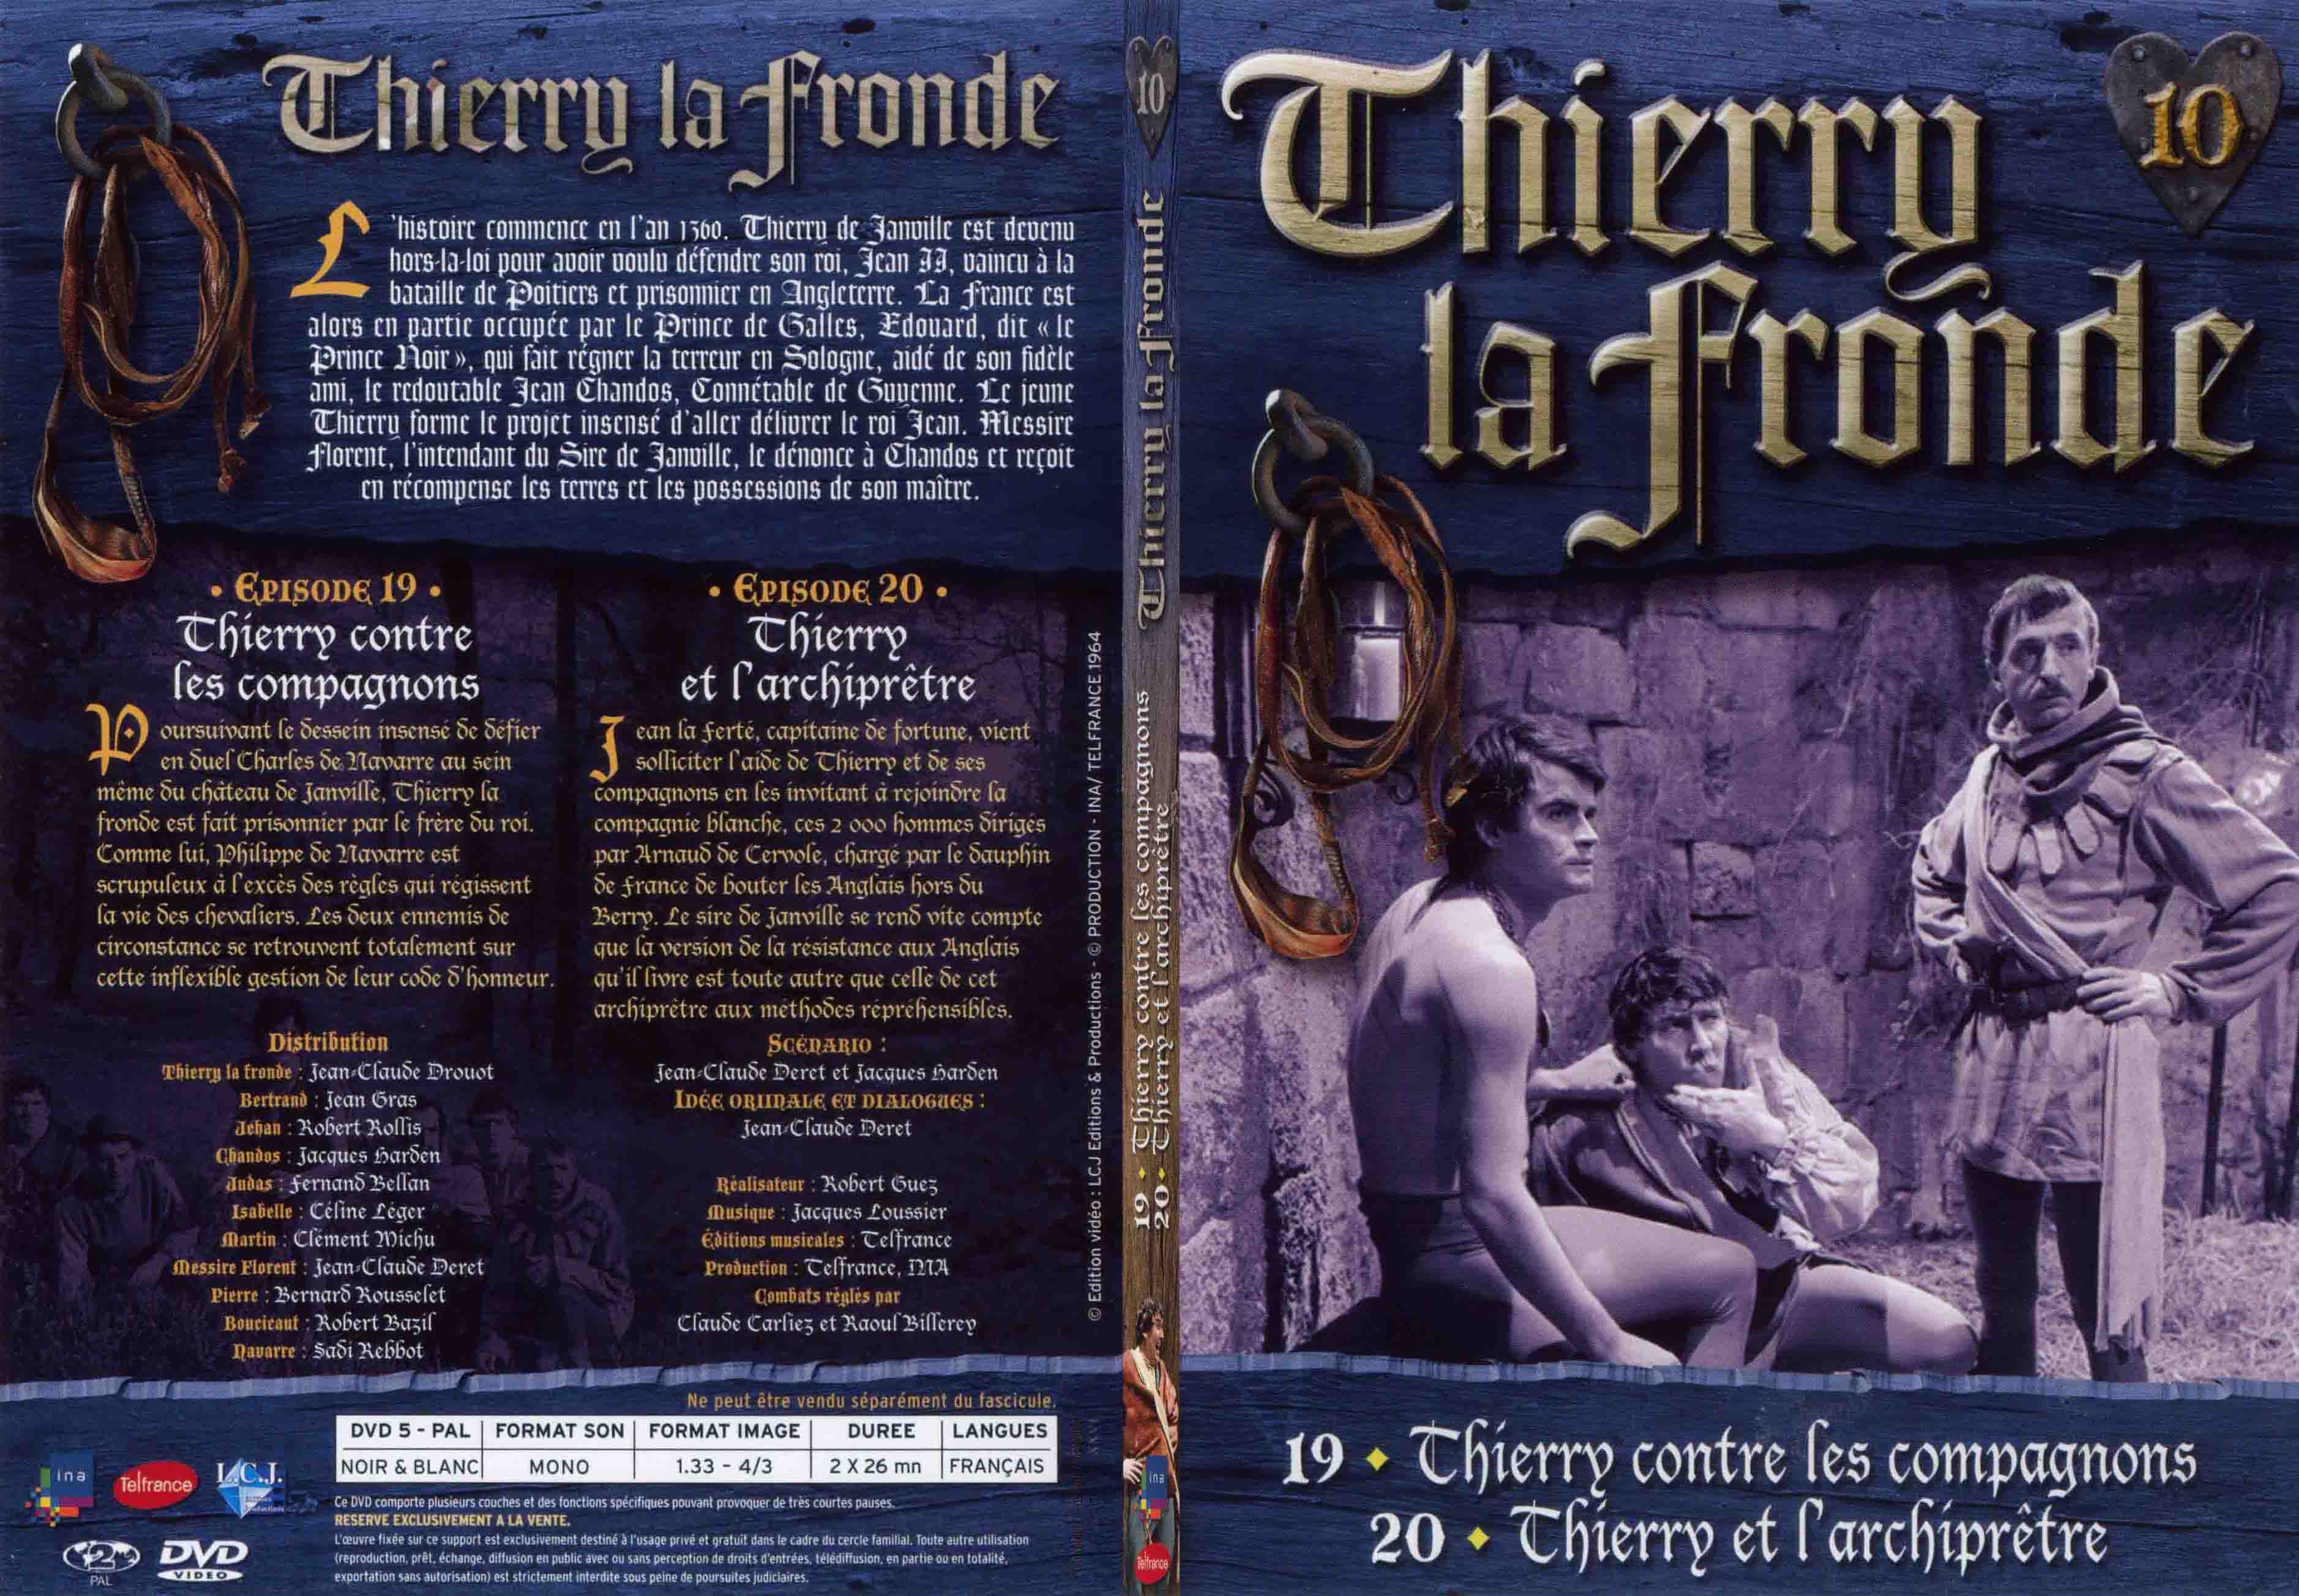 Jaquette DVD Thierry la Fronde vol 10 - SLIM